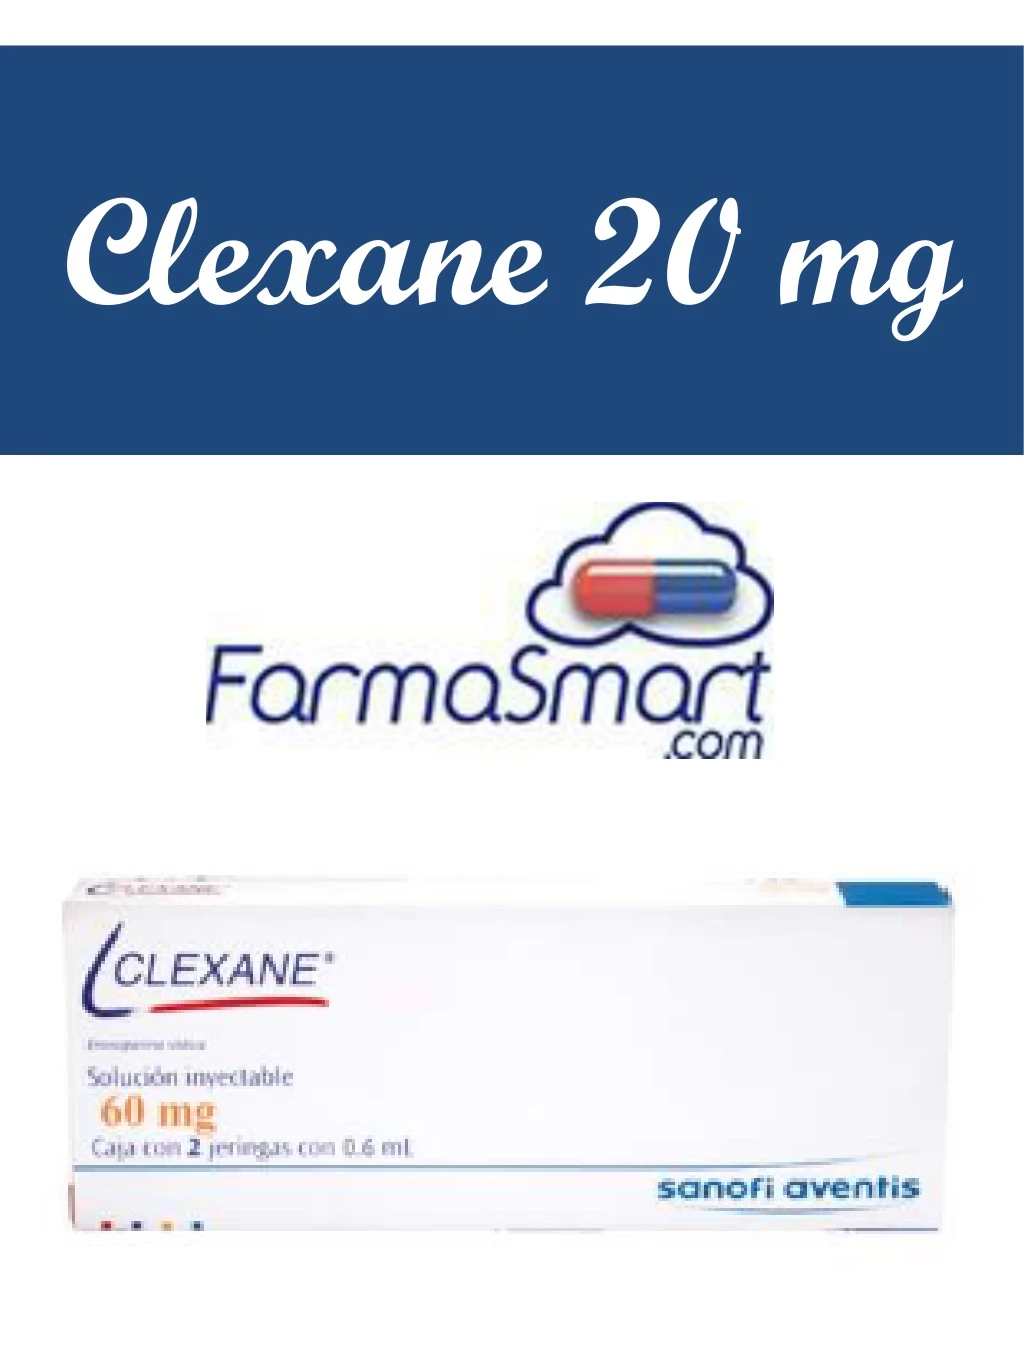 clexane 20 mg